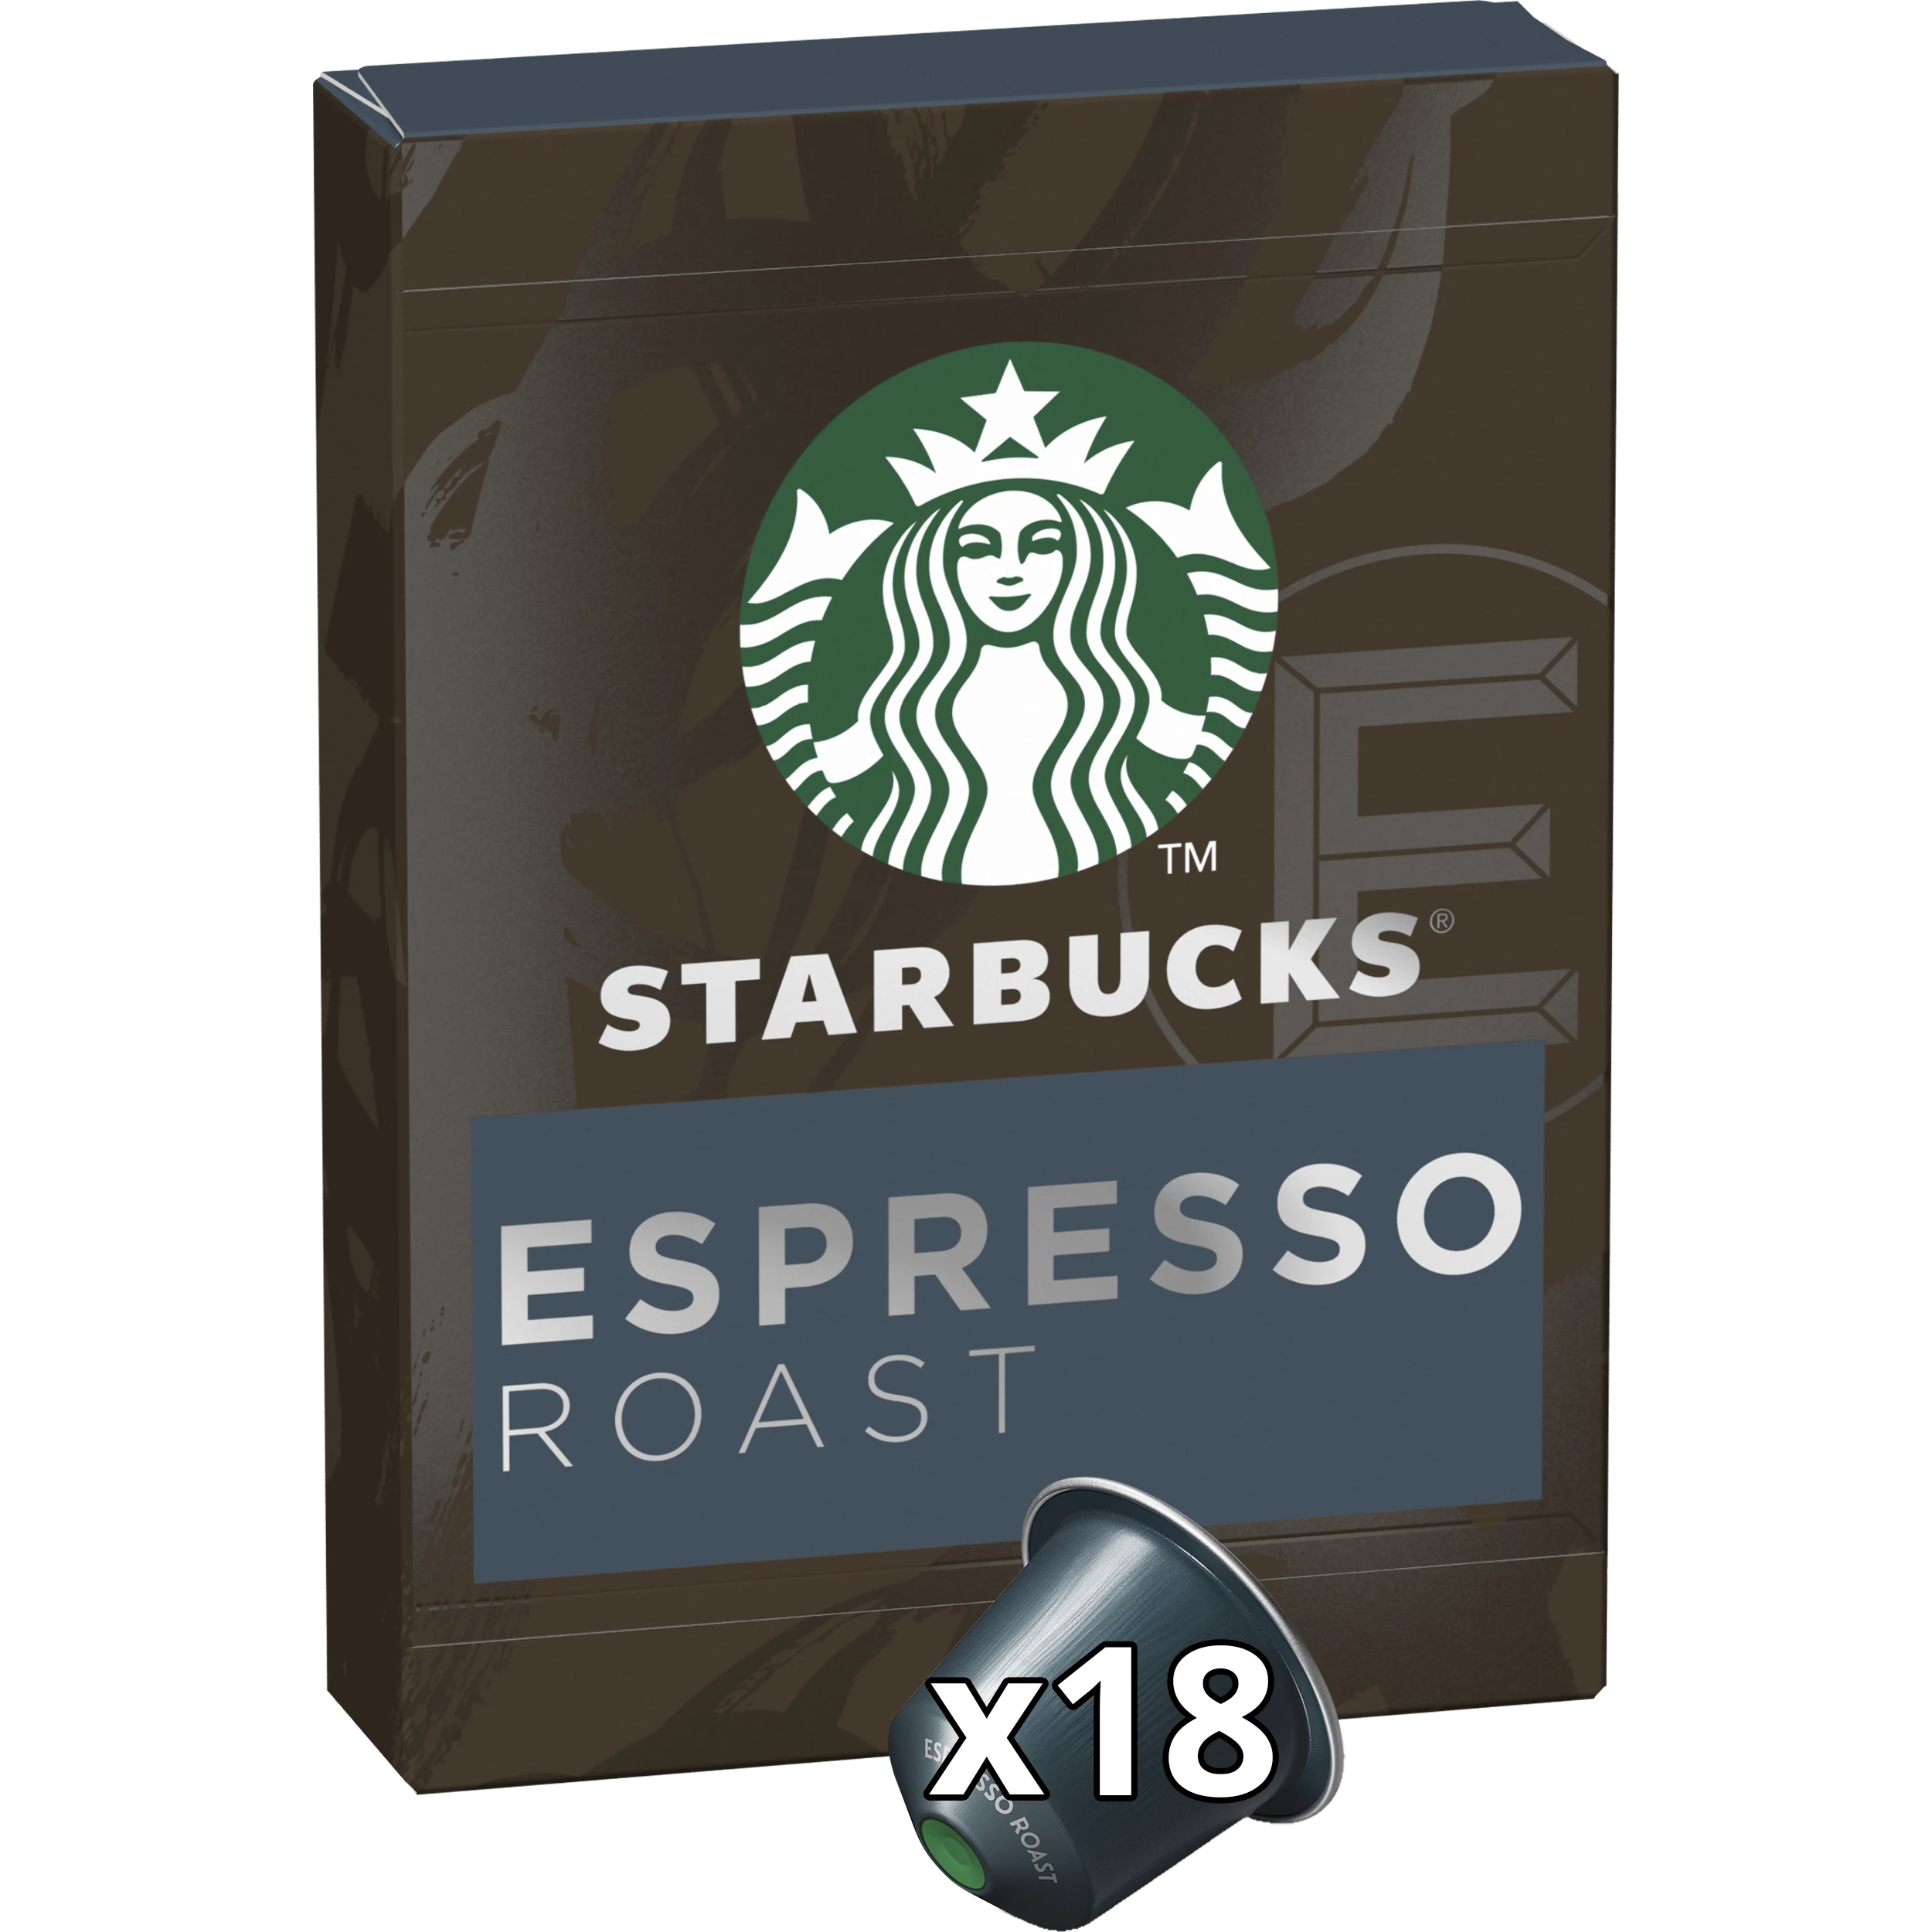 胶囊咖啡厅浓缩咖啡烘焙兼容 Nespresso x18； 101克 - STARBUCKS